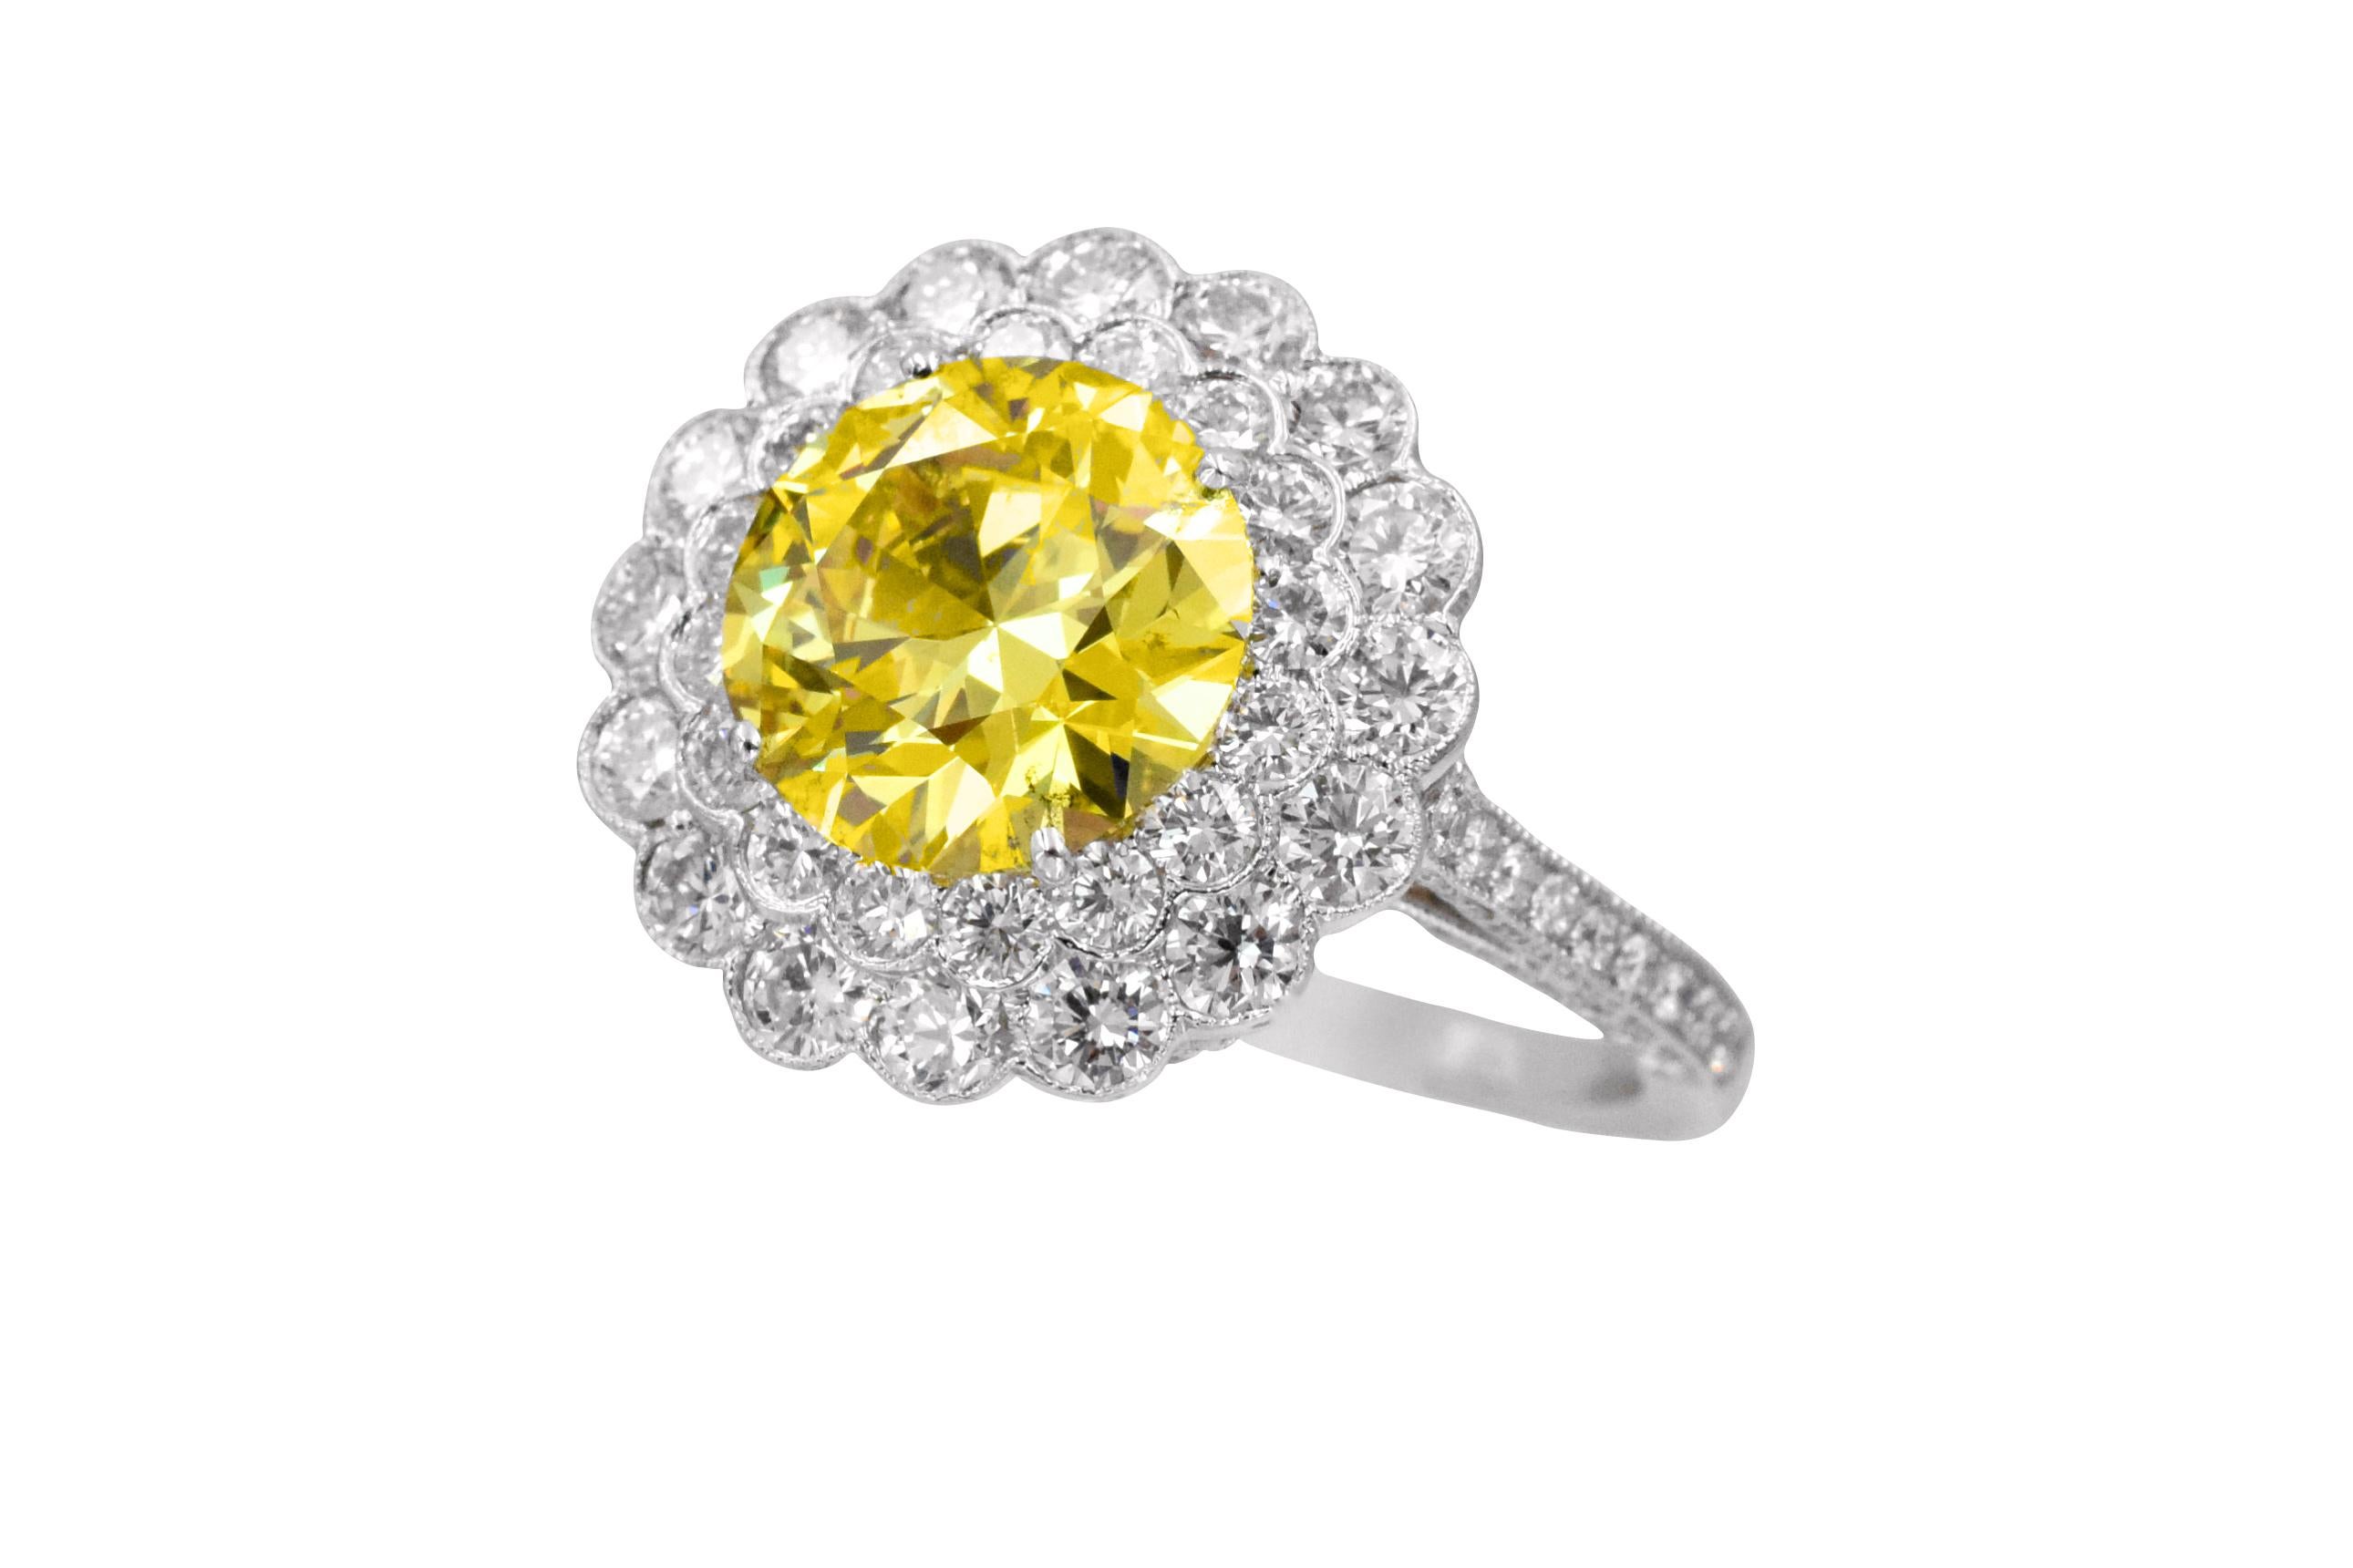 Bague à diamant Tiffany & Co
Le diamant central est  3.01 carat  G.I.A. certifié Fancy Vivid Yellow couleur  accentuée par des diamants ronds de taille brillant d'un poids total de 1,89 carat, la tige est également soulignée par des diamants ronds.
